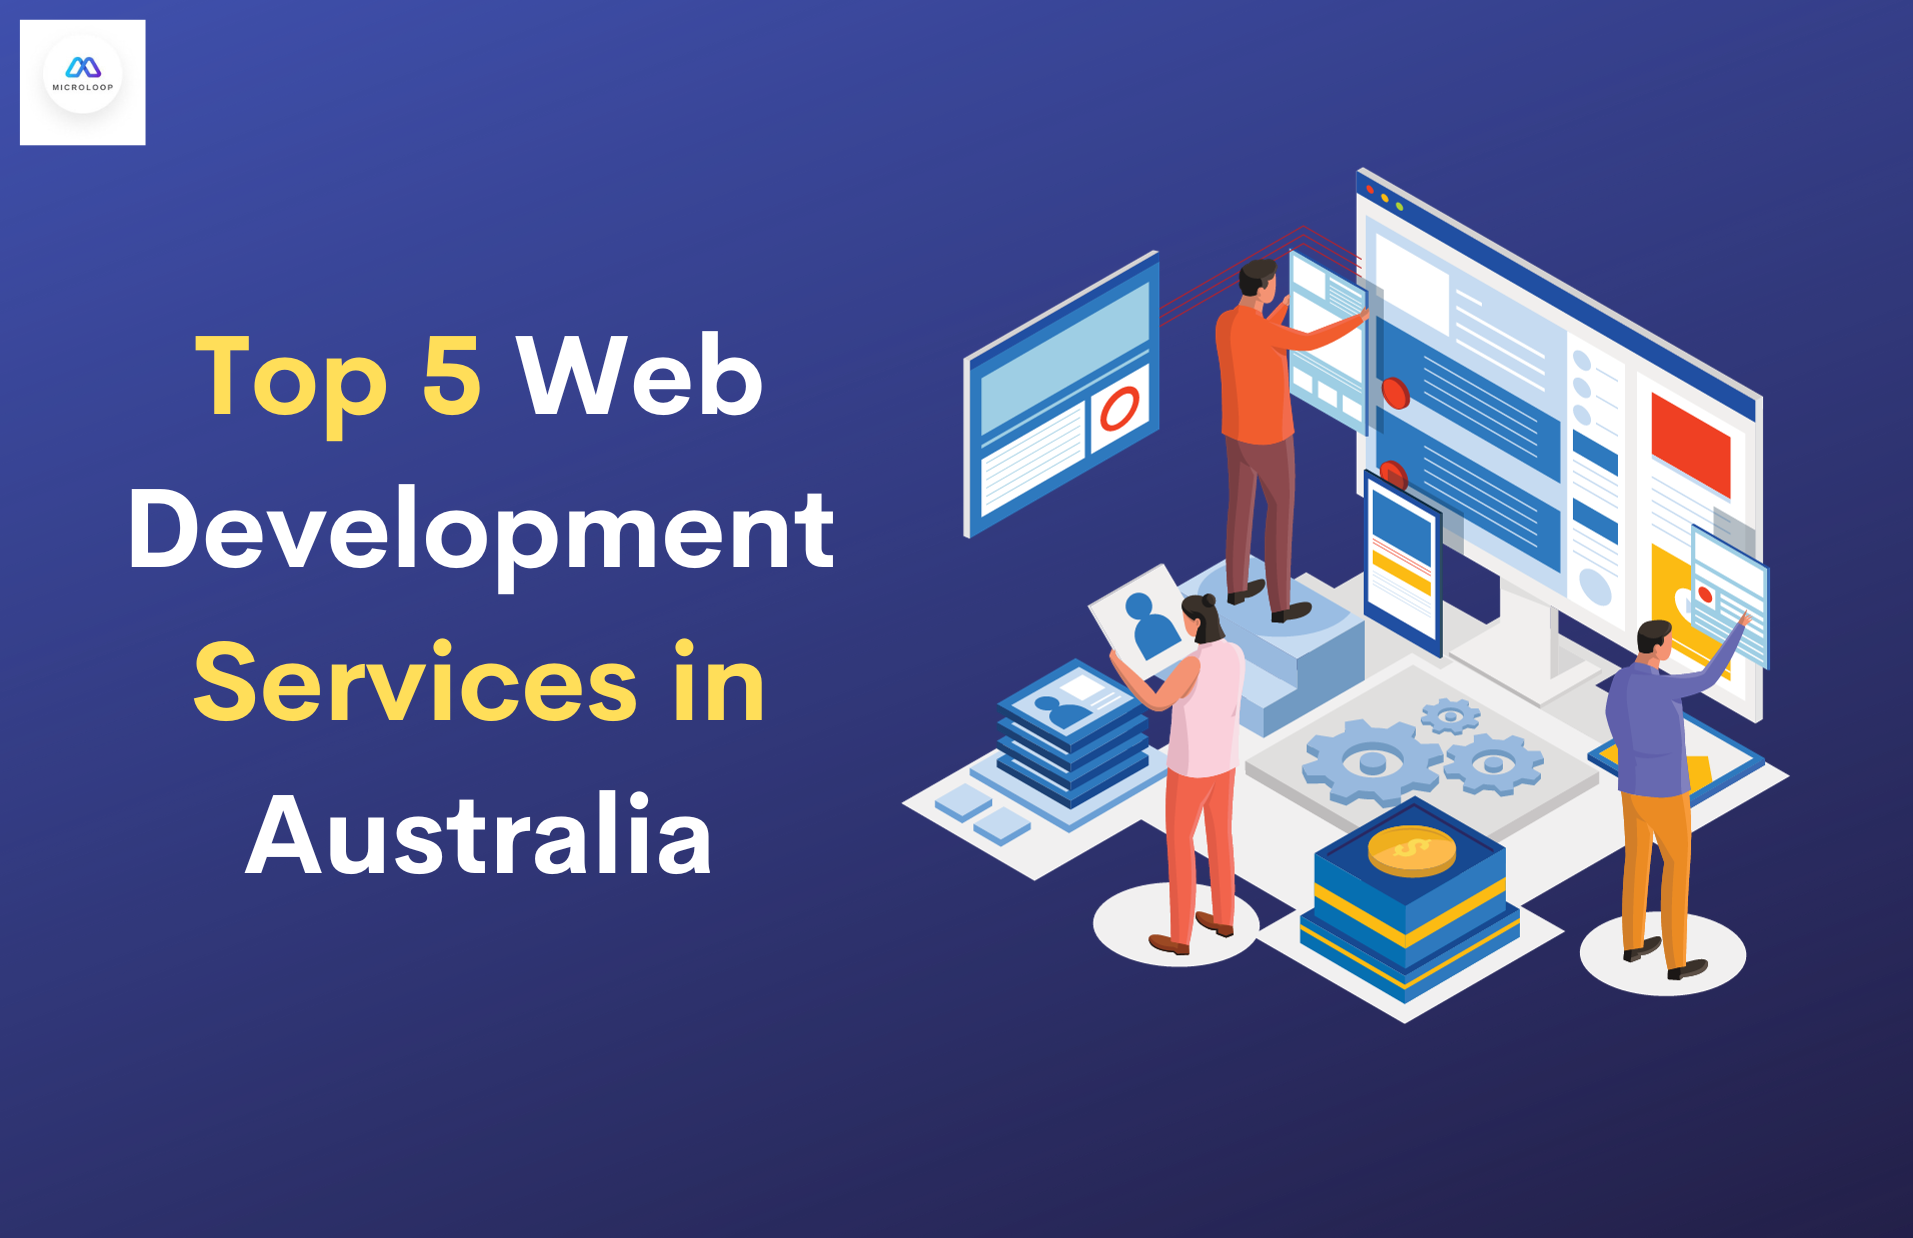 Top 5 Web Development Services in Australia